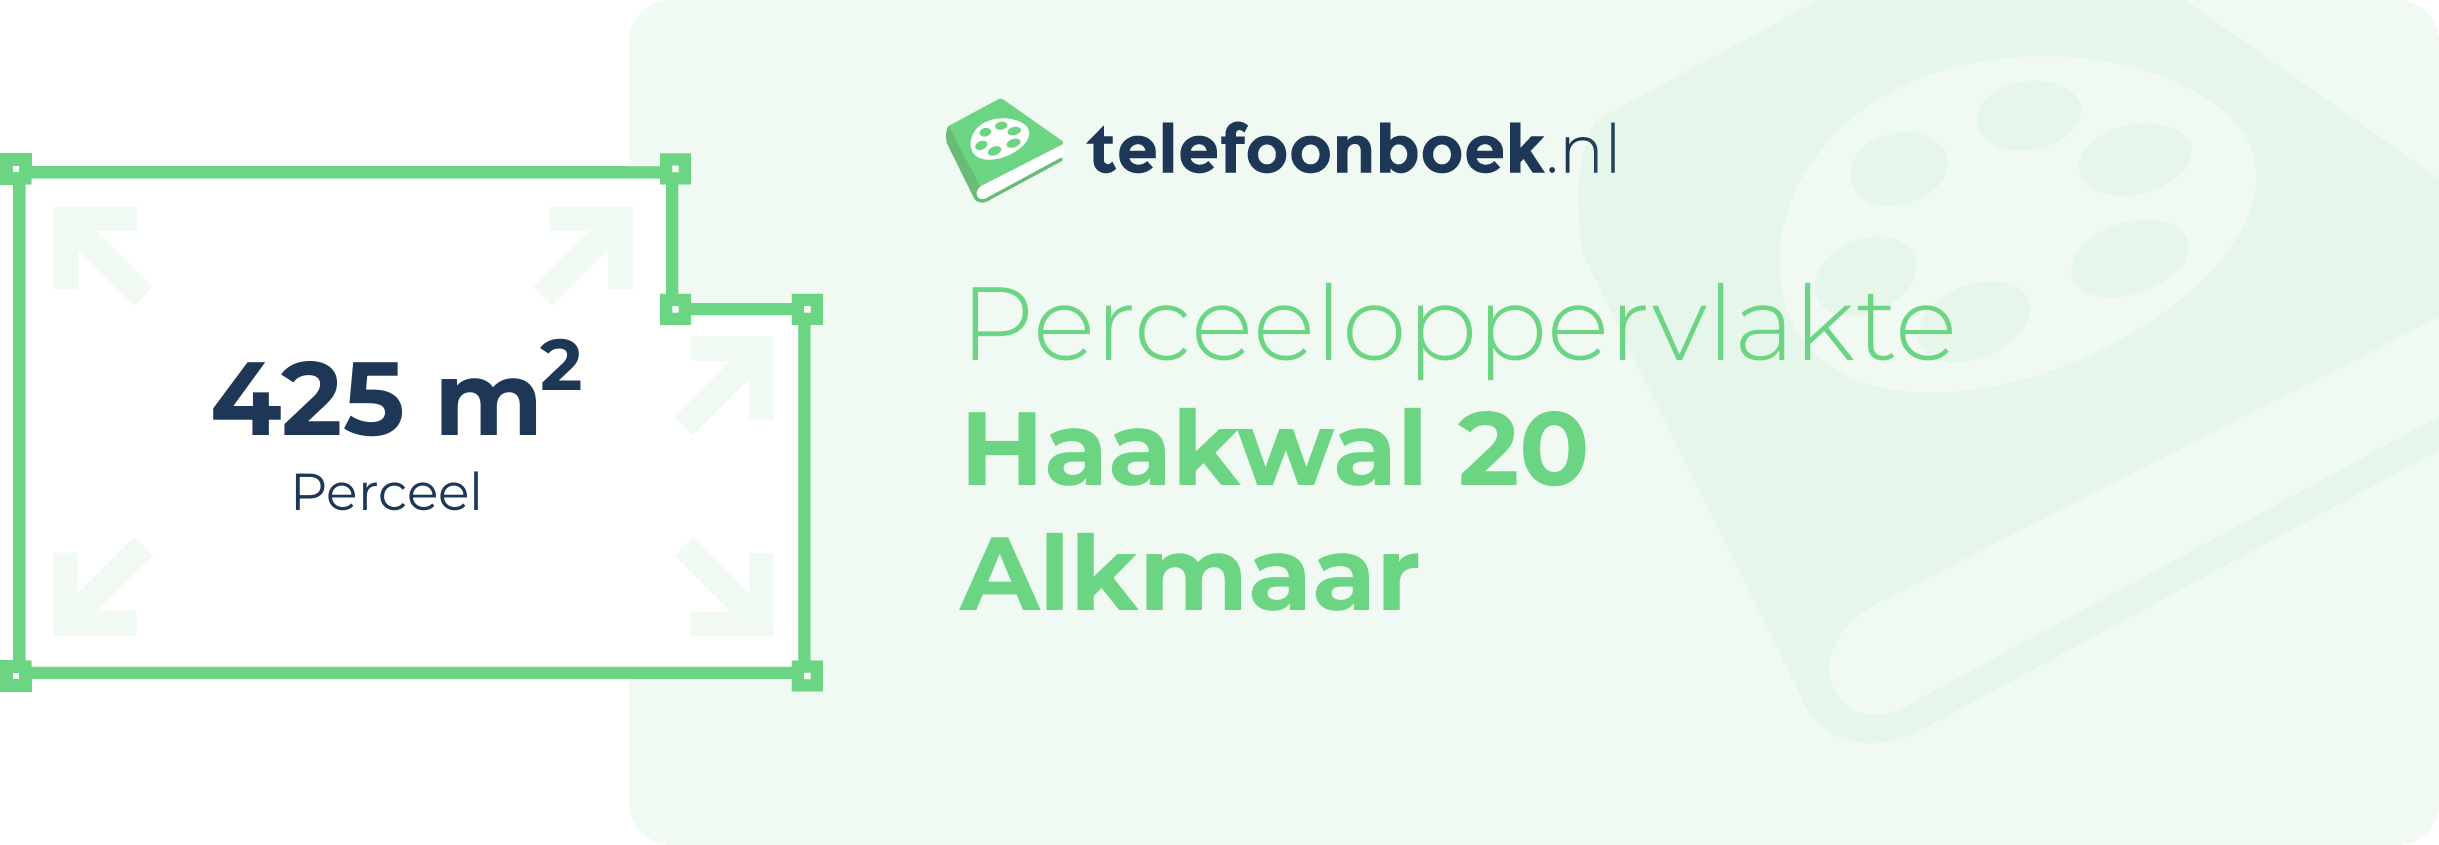 Perceeloppervlakte Haakwal 20 Alkmaar